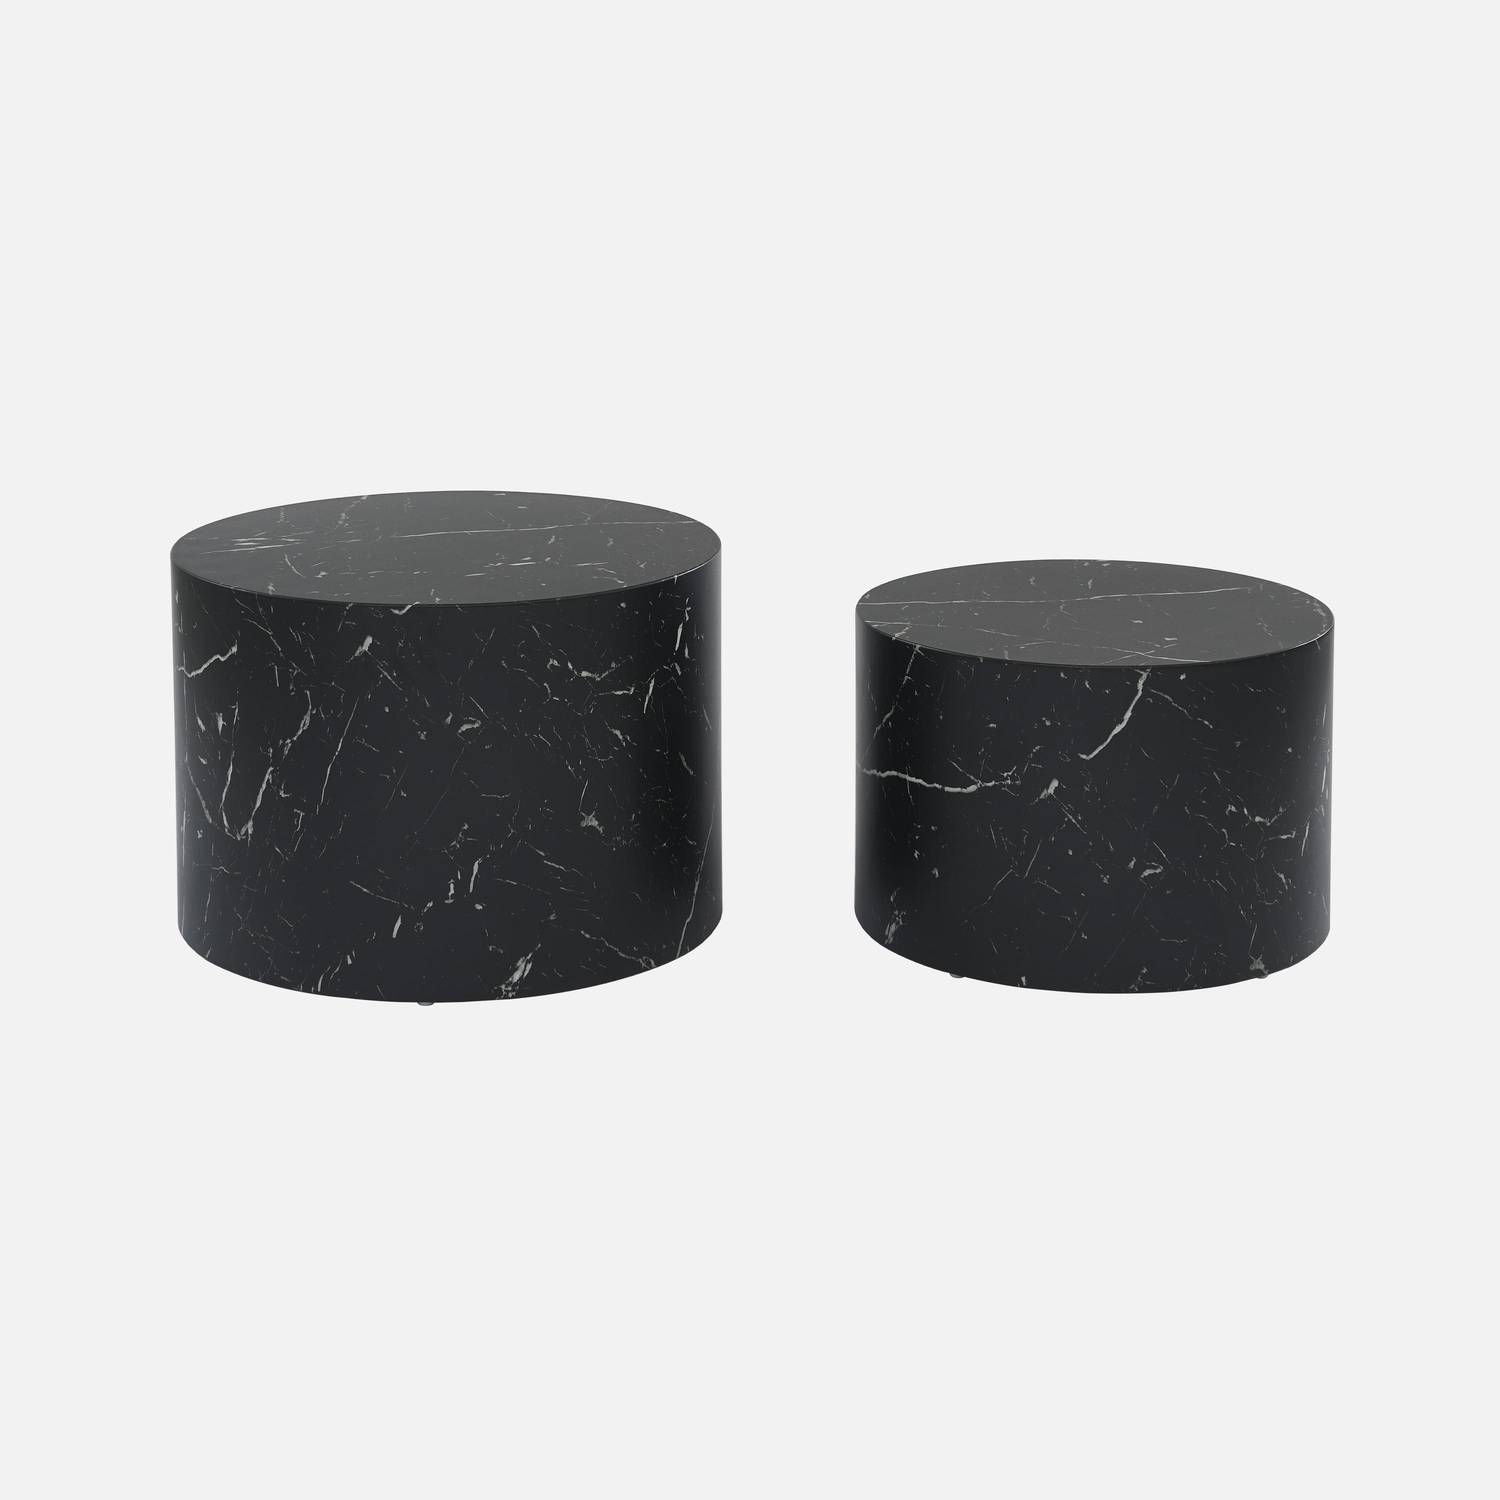 Conjunto de 2 mesas de centro redondas , efeito mármore preto, mesas de encaixe Ø58 x A 40cm / Ø50 x A 33cm Photo4